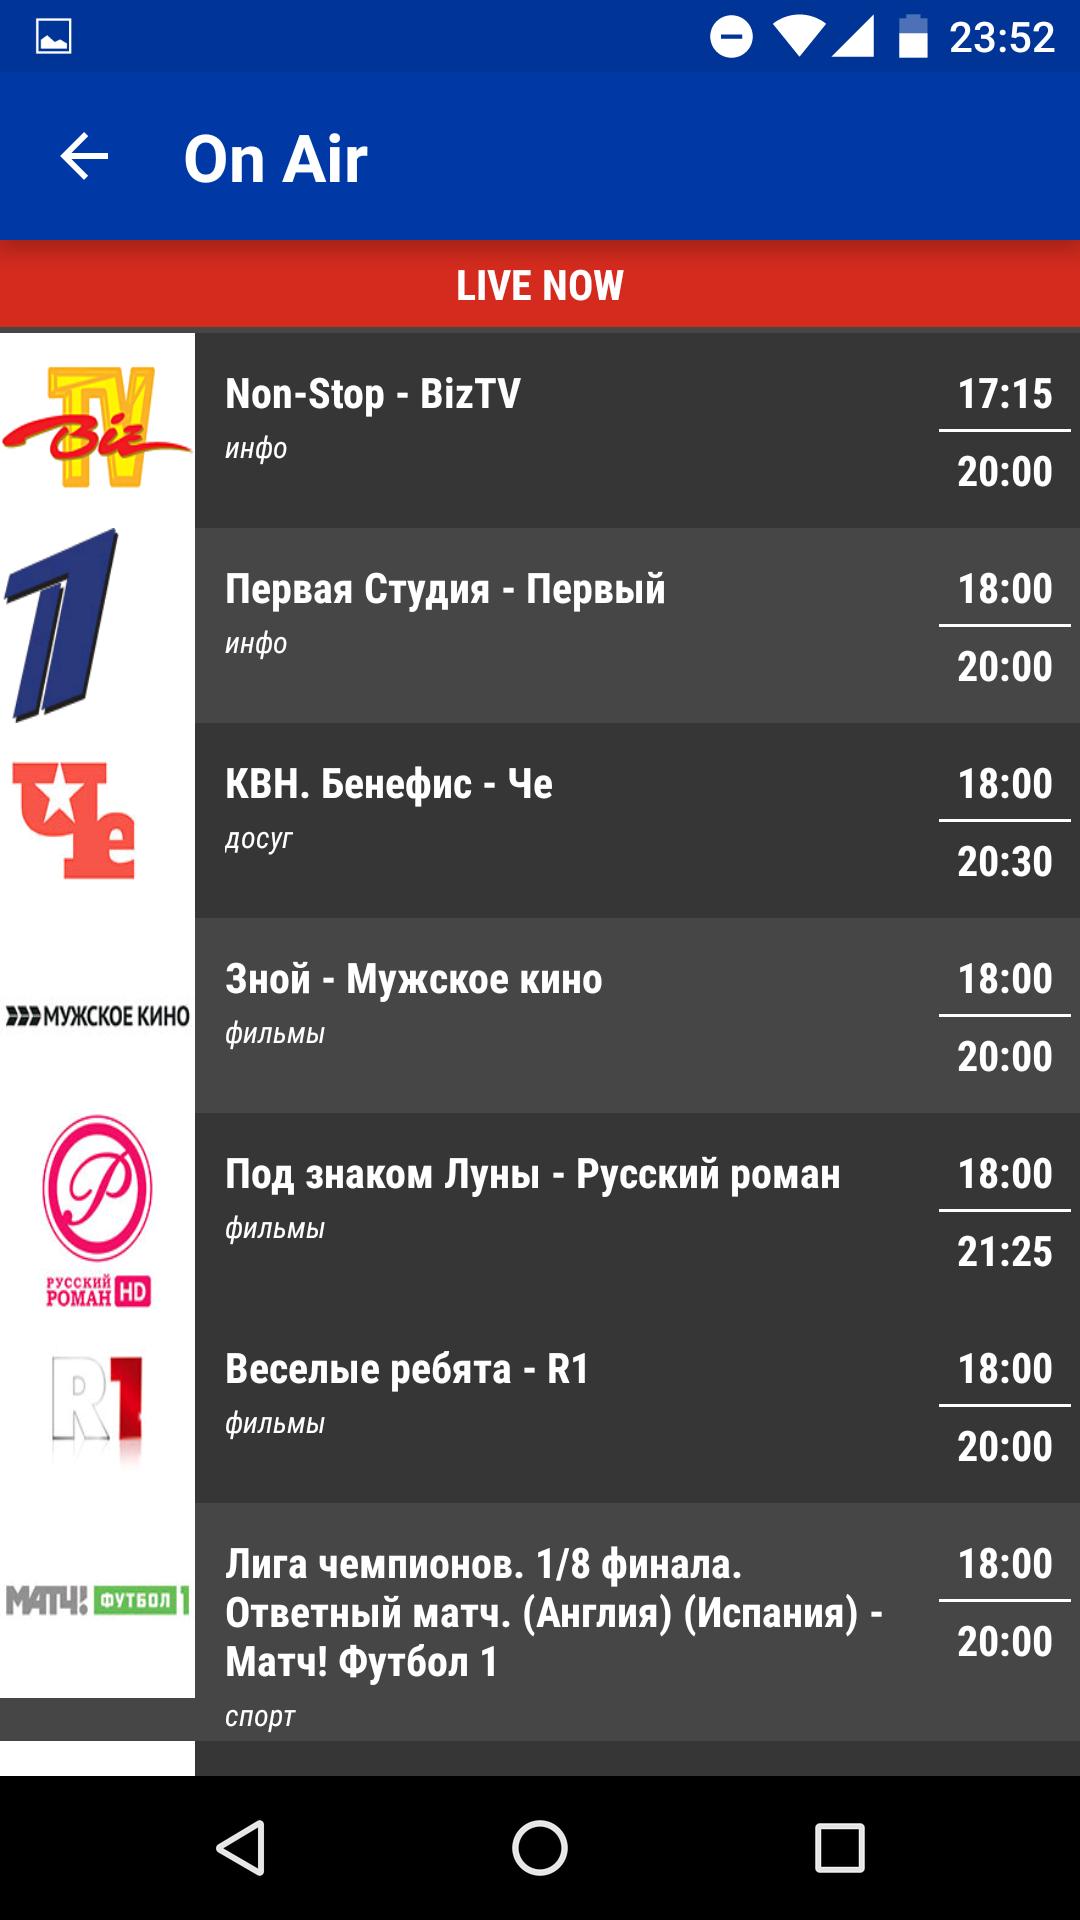 Russia TV Today - Free TV Schedule APK voor Android Download